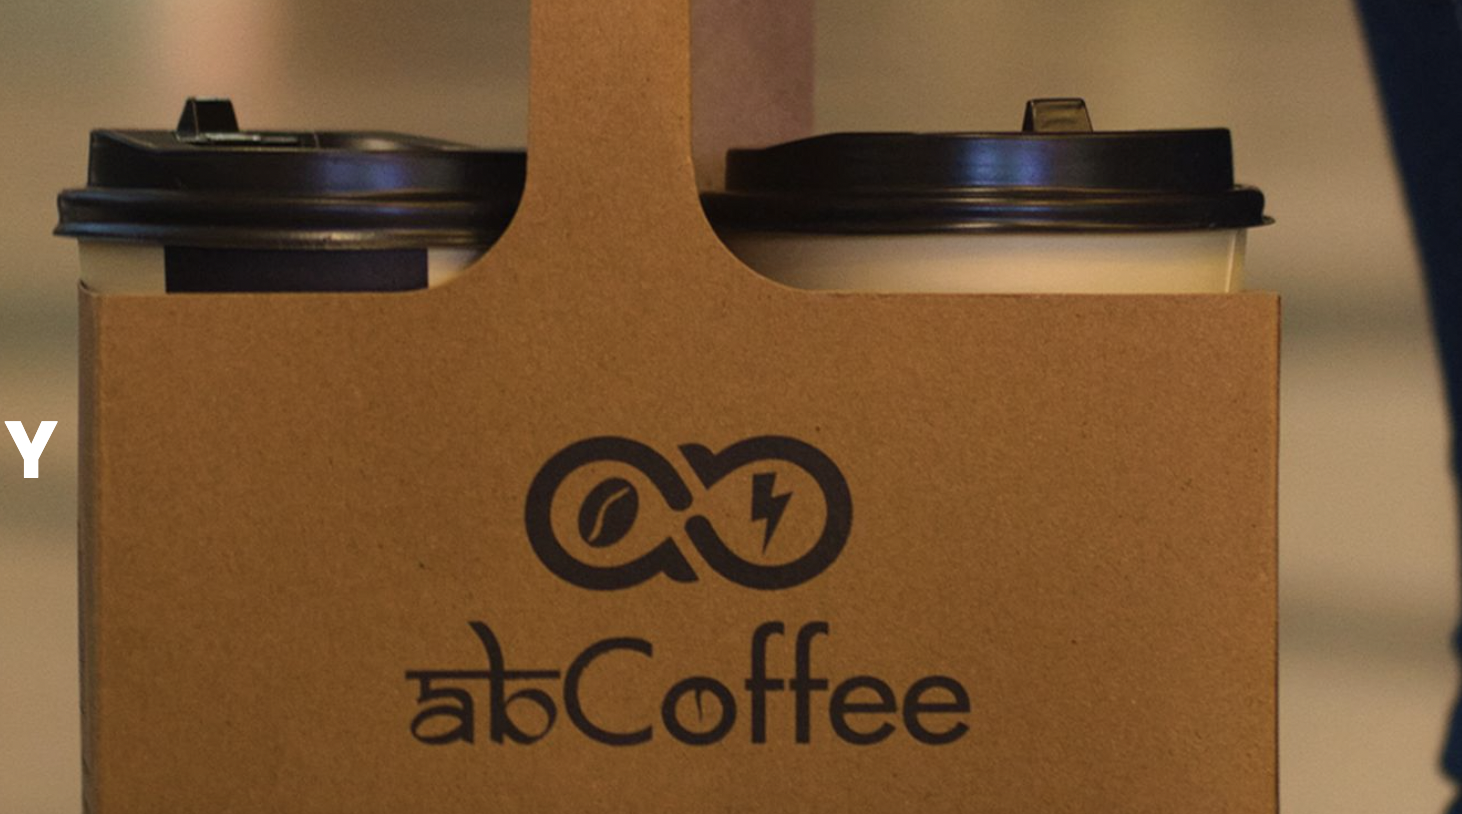 咖啡连锁品牌abCoffee完成340万美元A轮融资